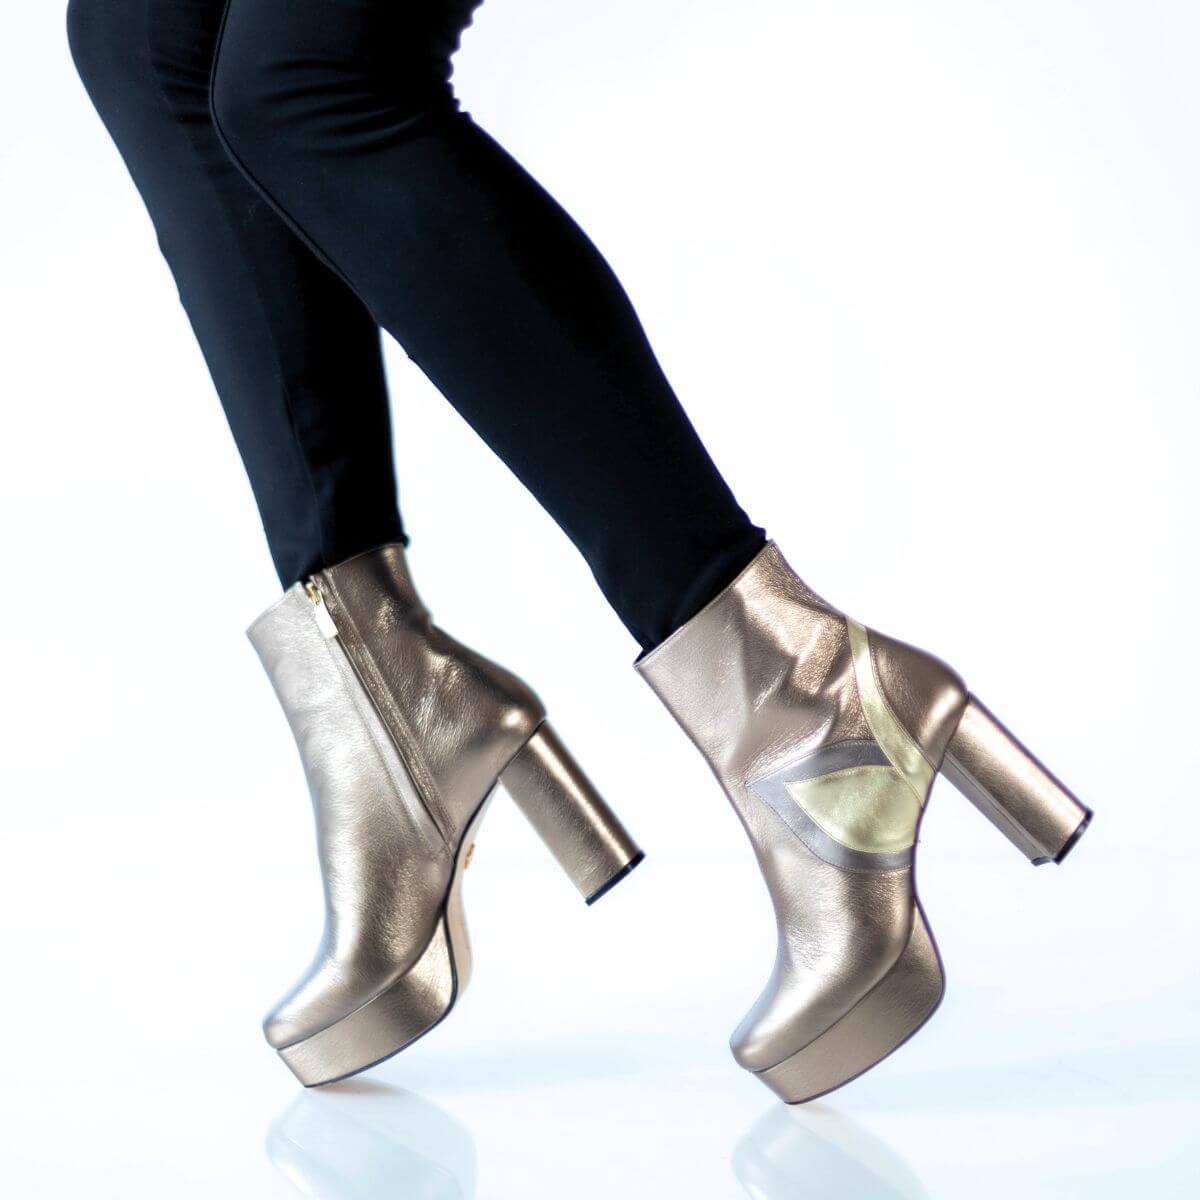 VIRGINIA 95 - Multimetal Regina Romero Zapato Bota Botin Plataforma Tacon Alto Para Dama en Piel